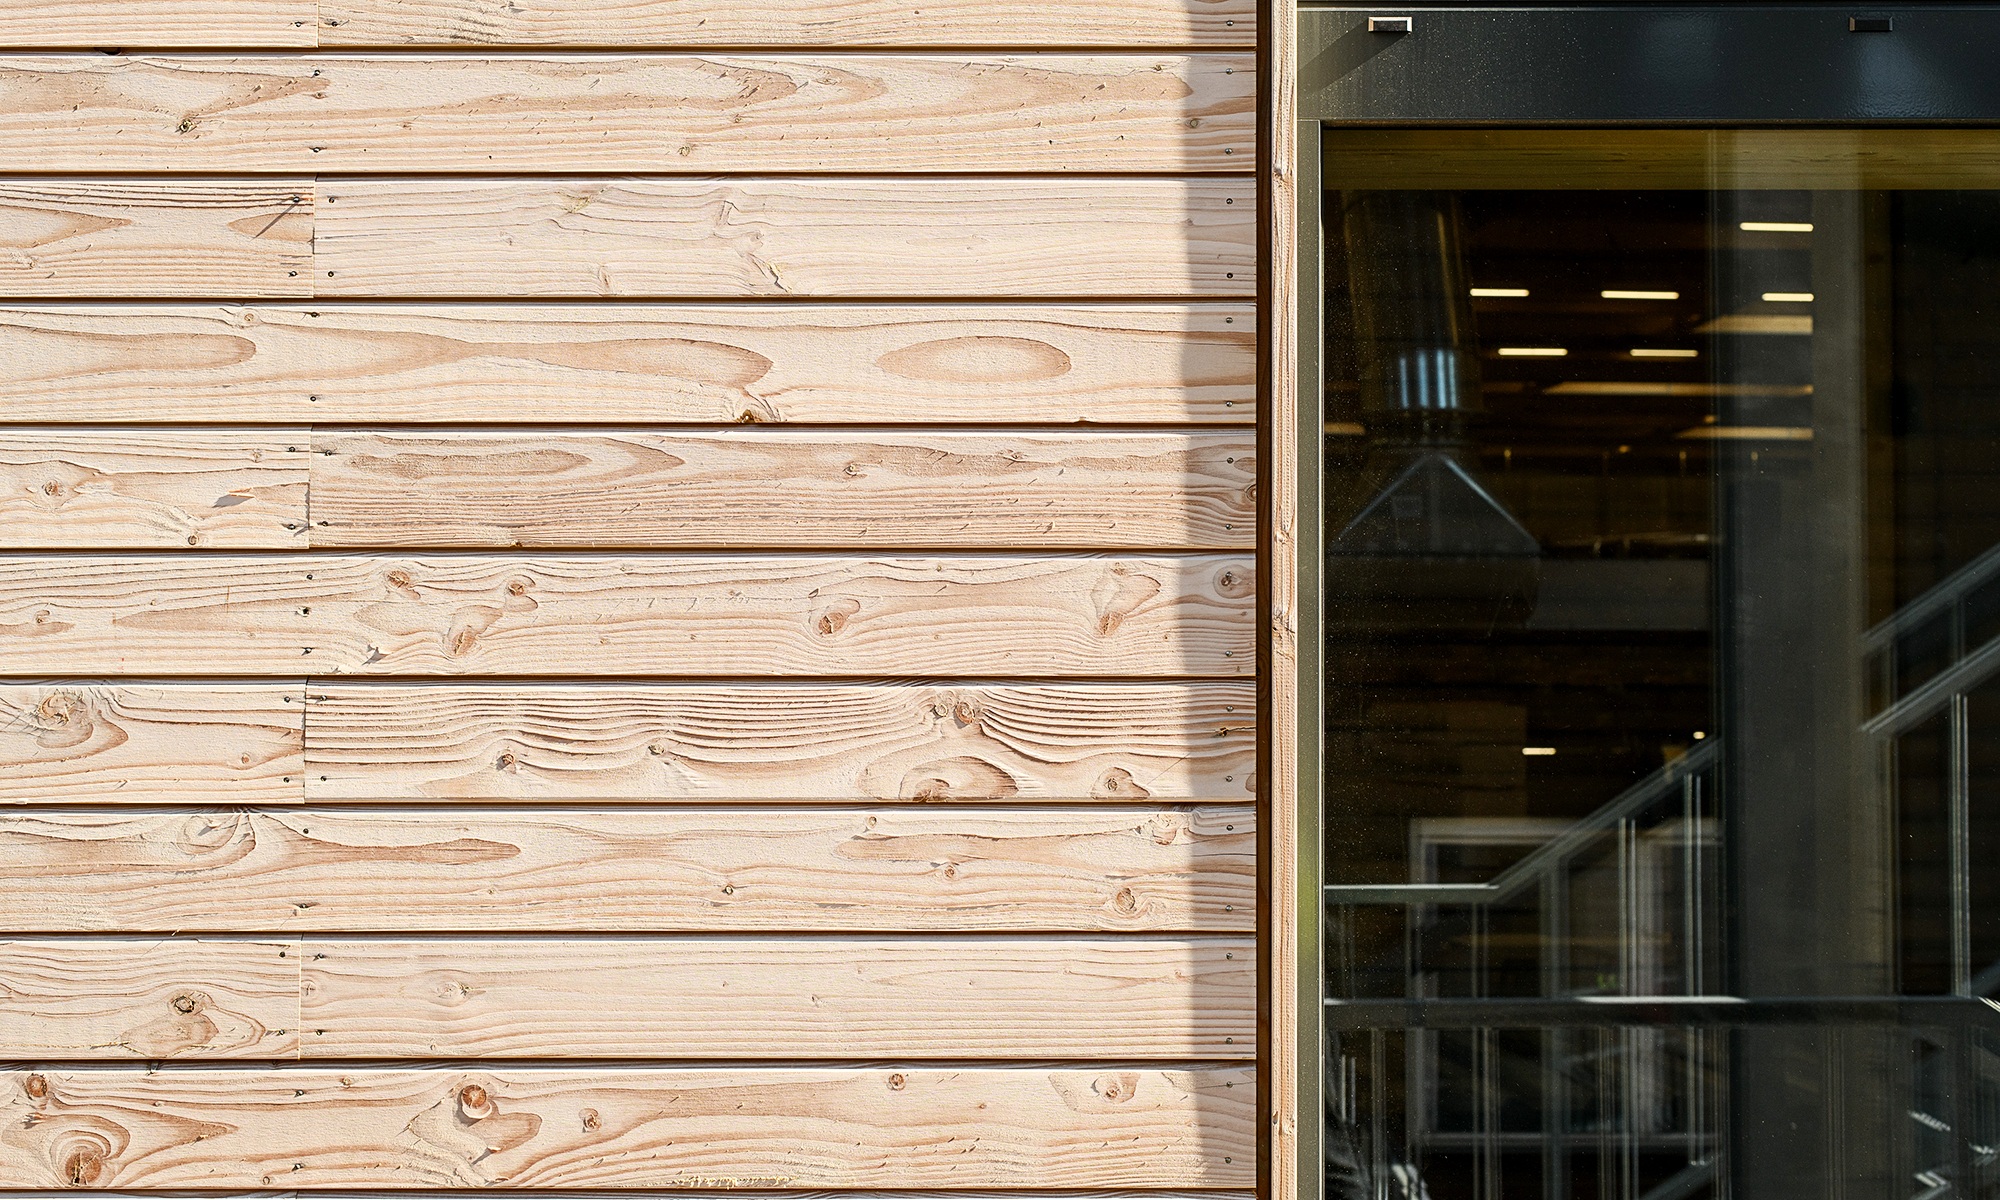 Detailansicht der Uvood-behandelten horizontal verlegten Holzfassade. Daneben der Ausschnitt einer Fensterscheibe. 